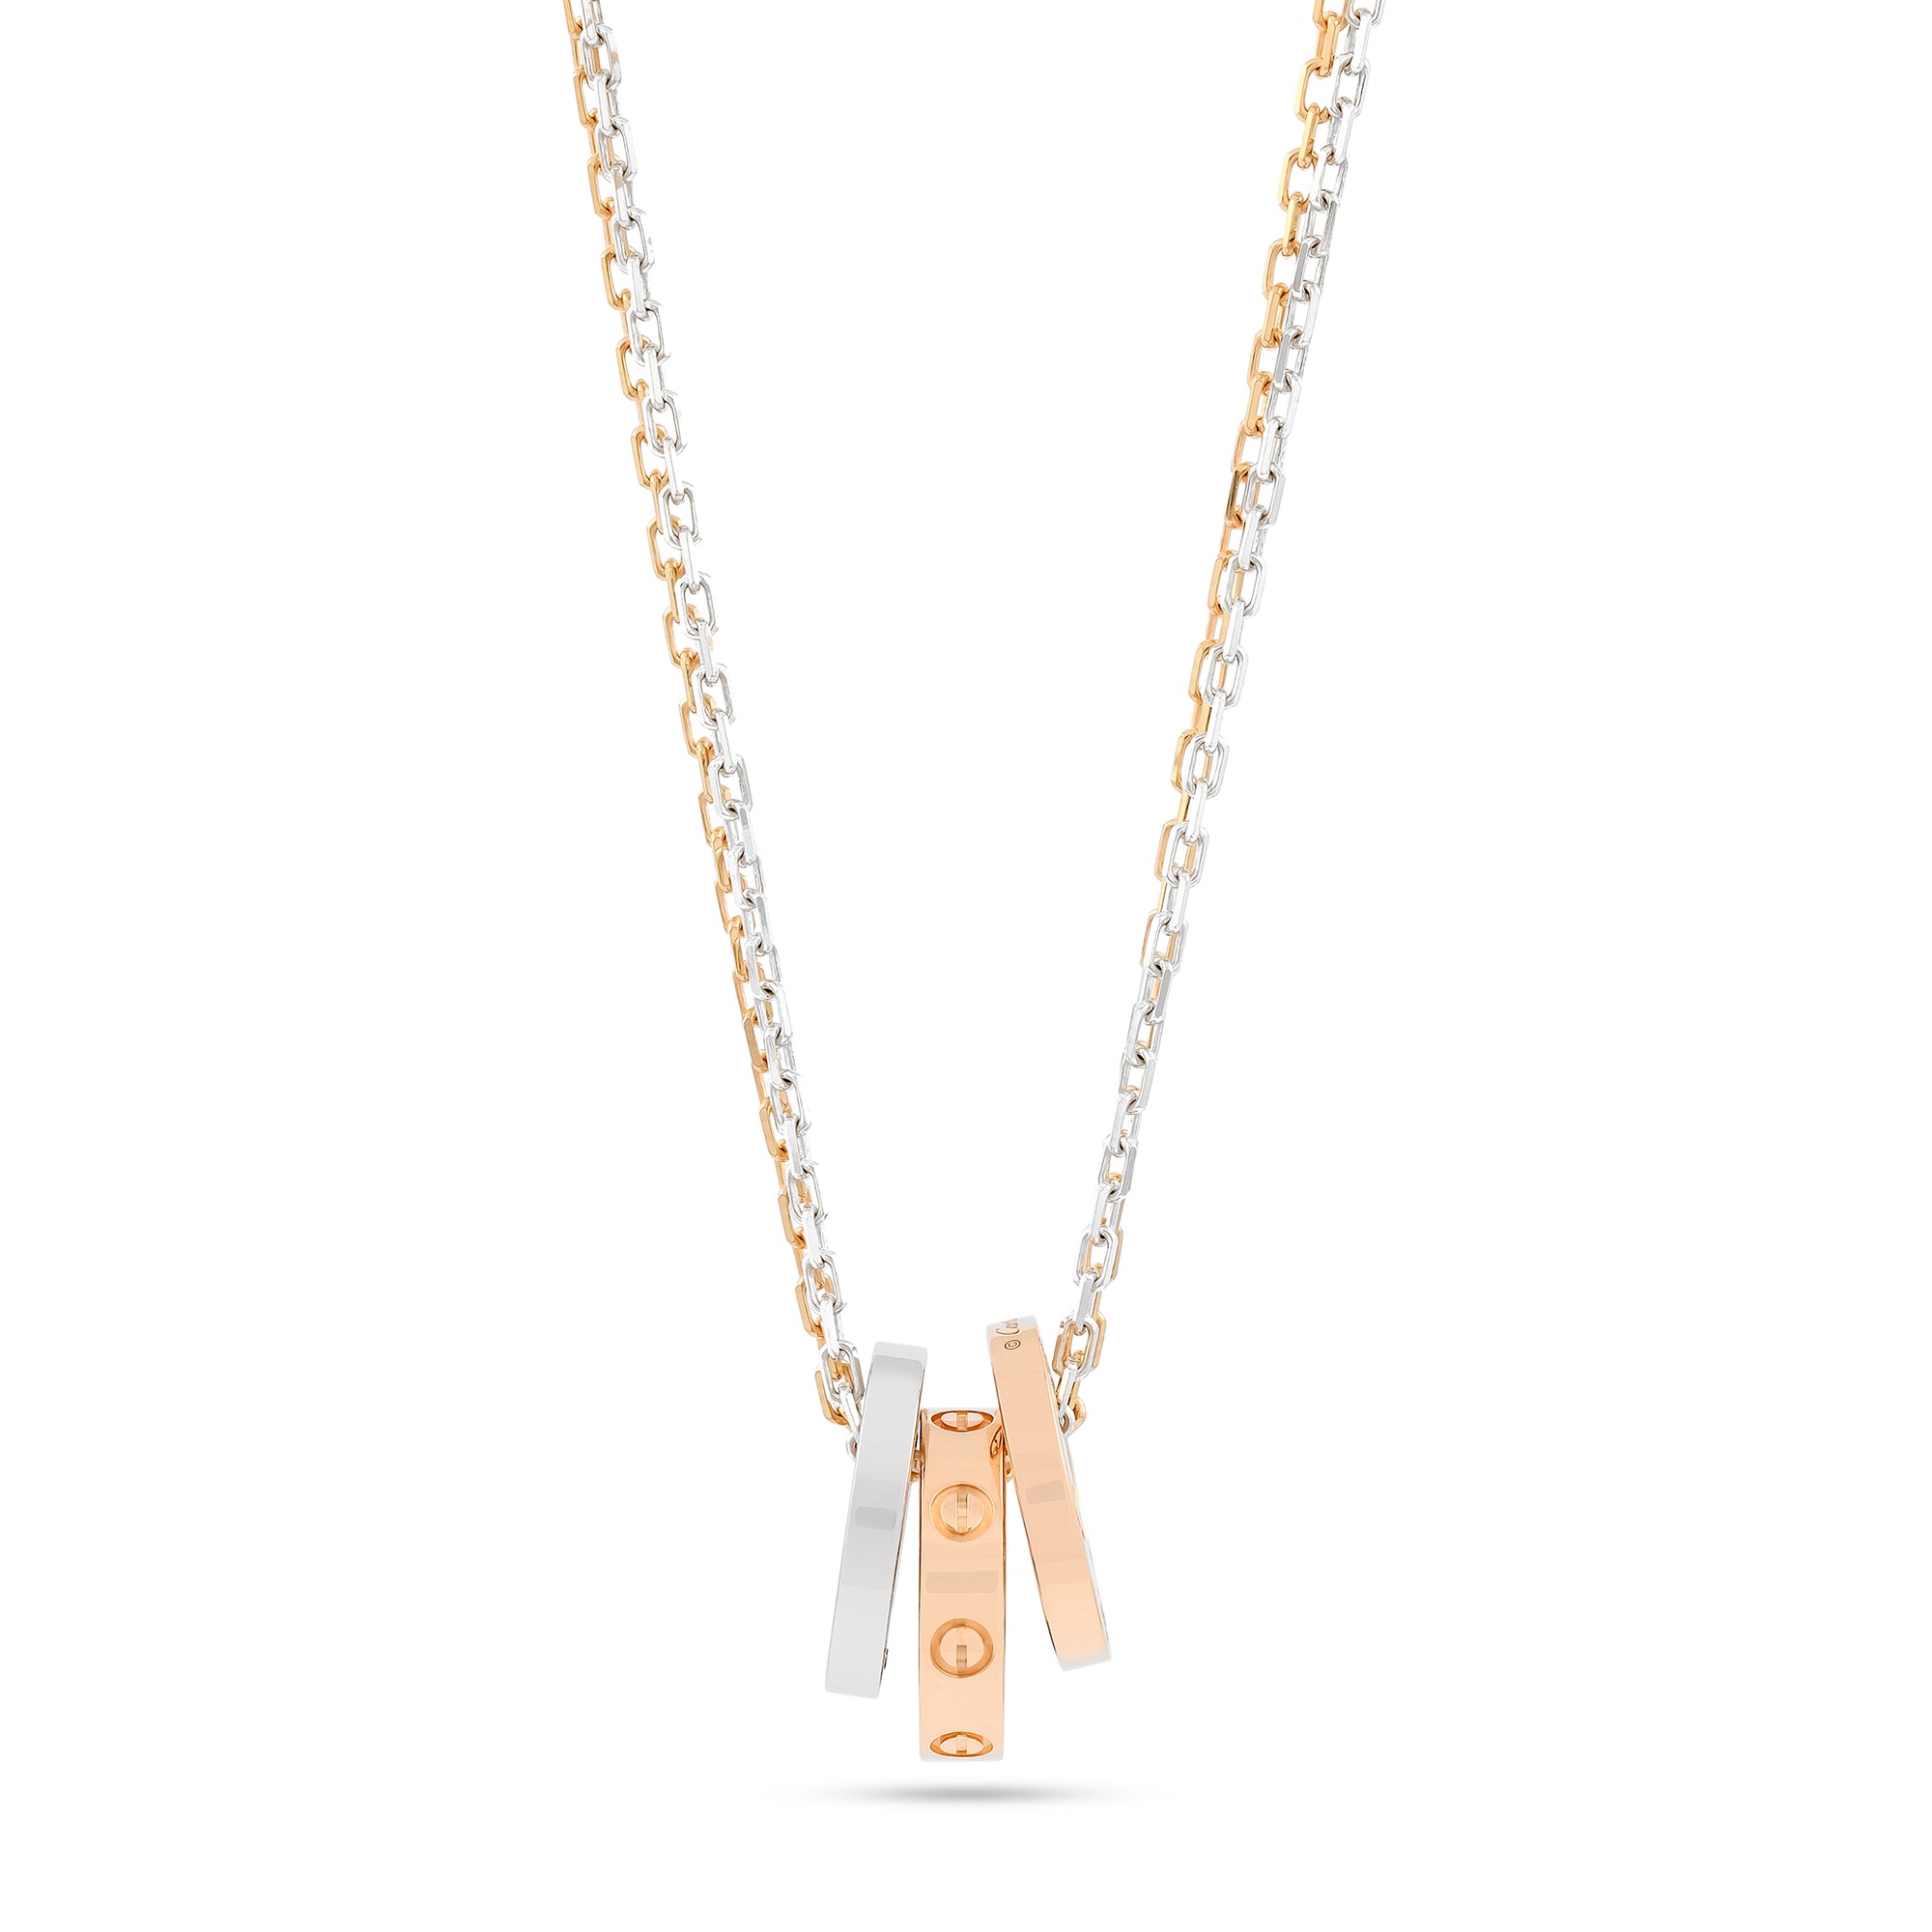 Cartier Diamond Love Necklace